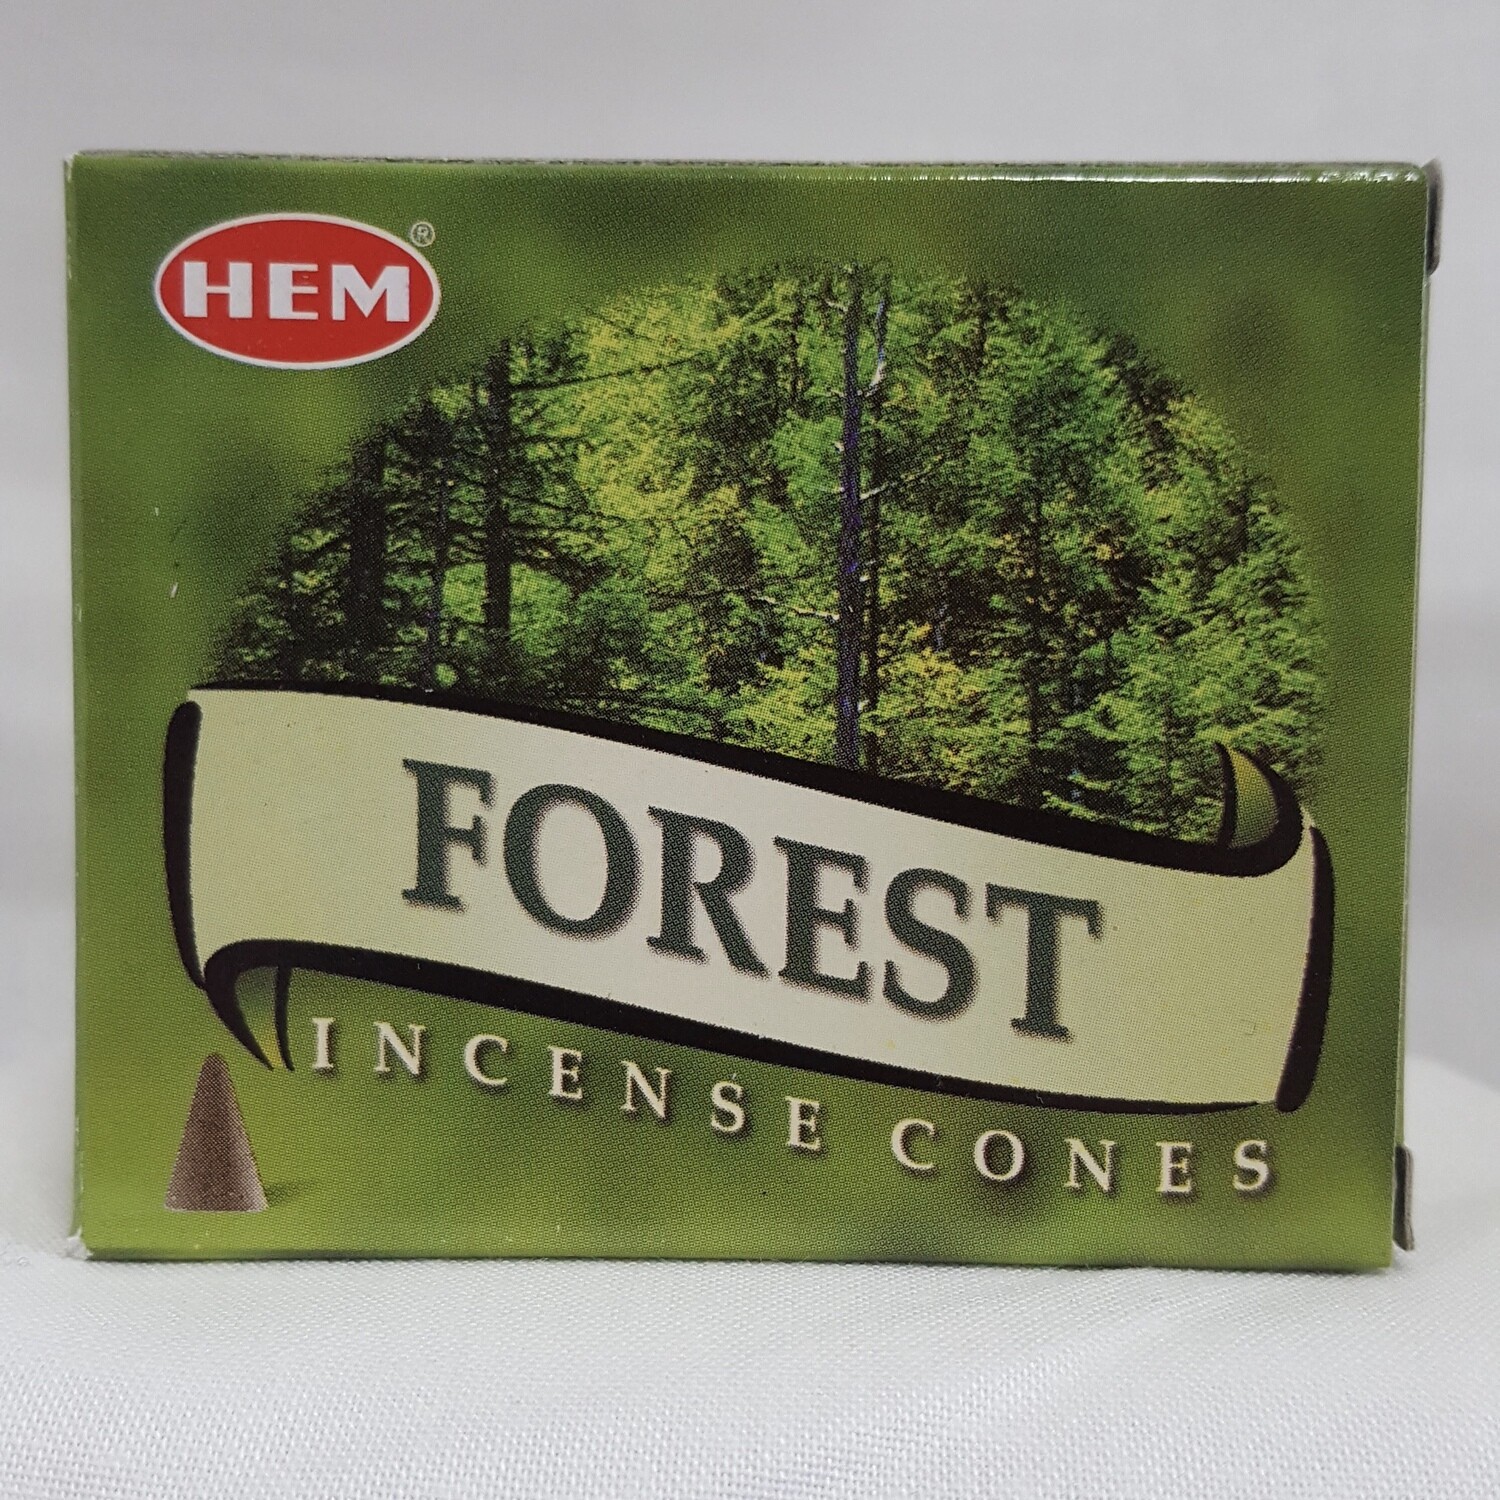 FOREST HEM CONES